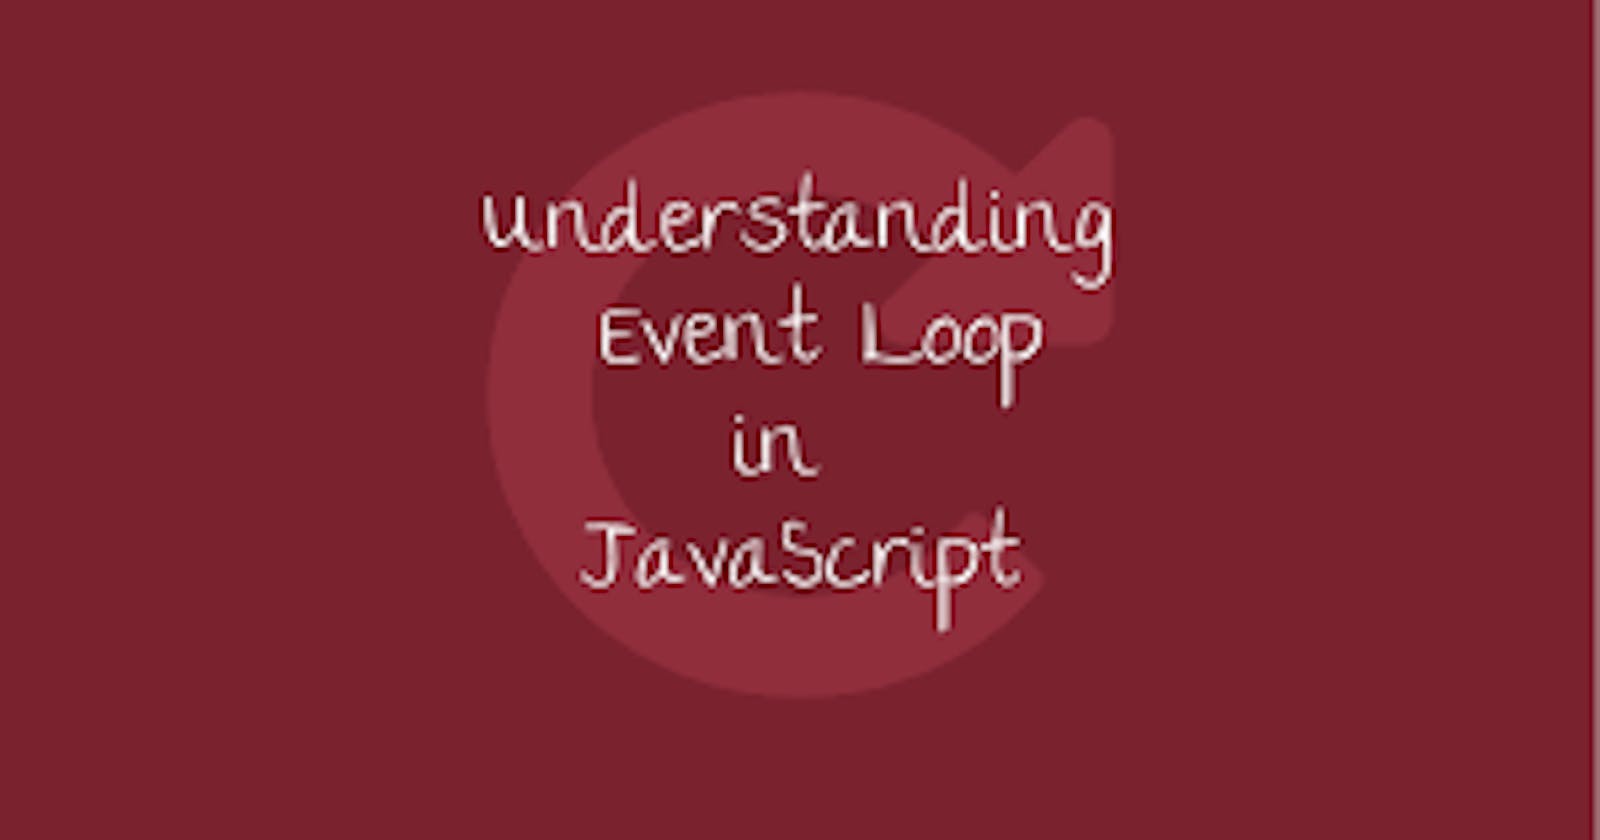 Event loop in JavaScript